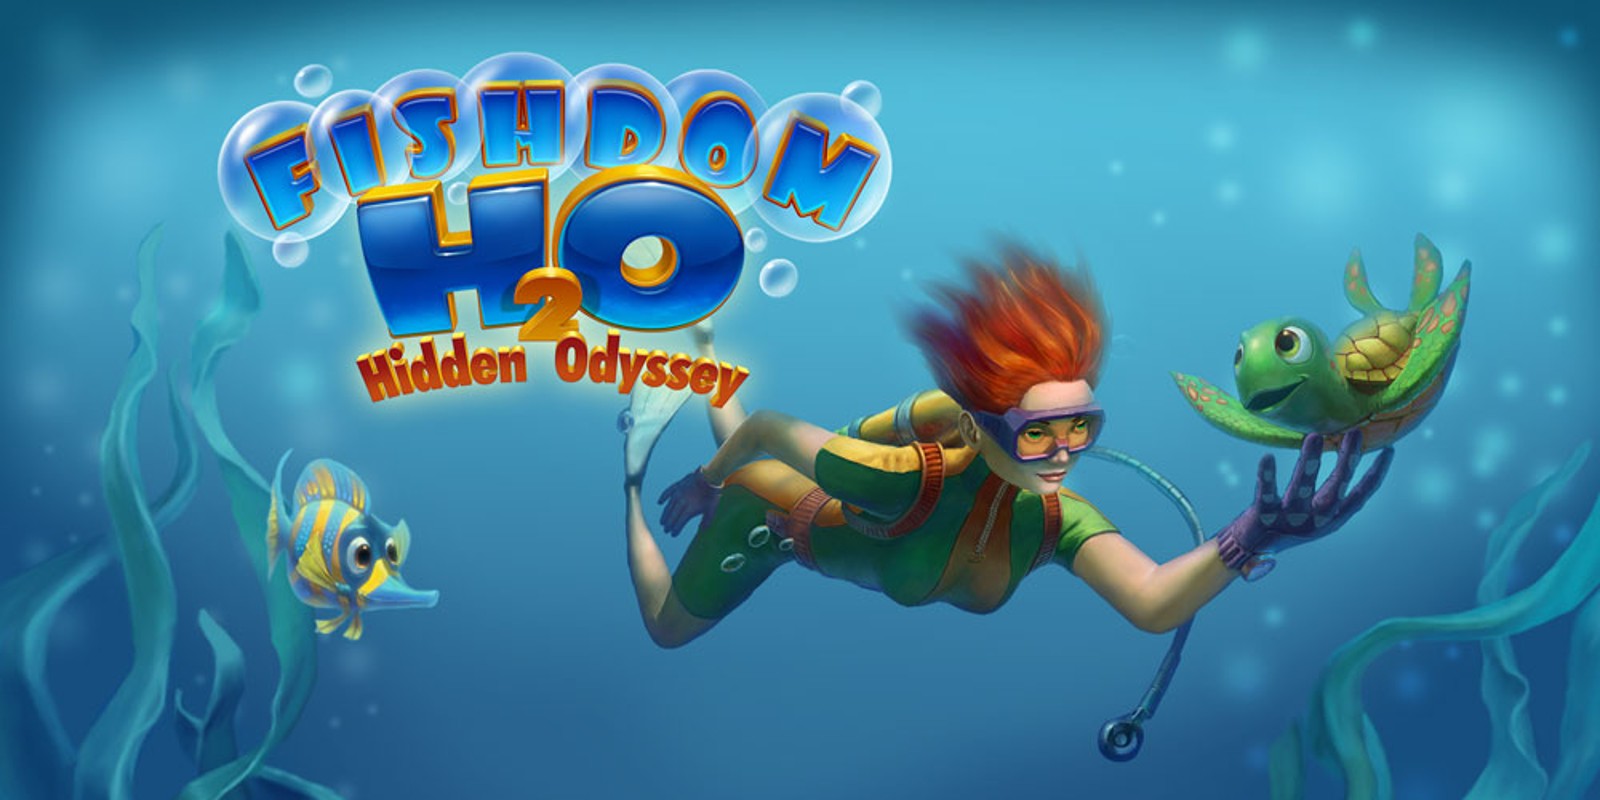 play free online fishdom h2o hidden odyssey